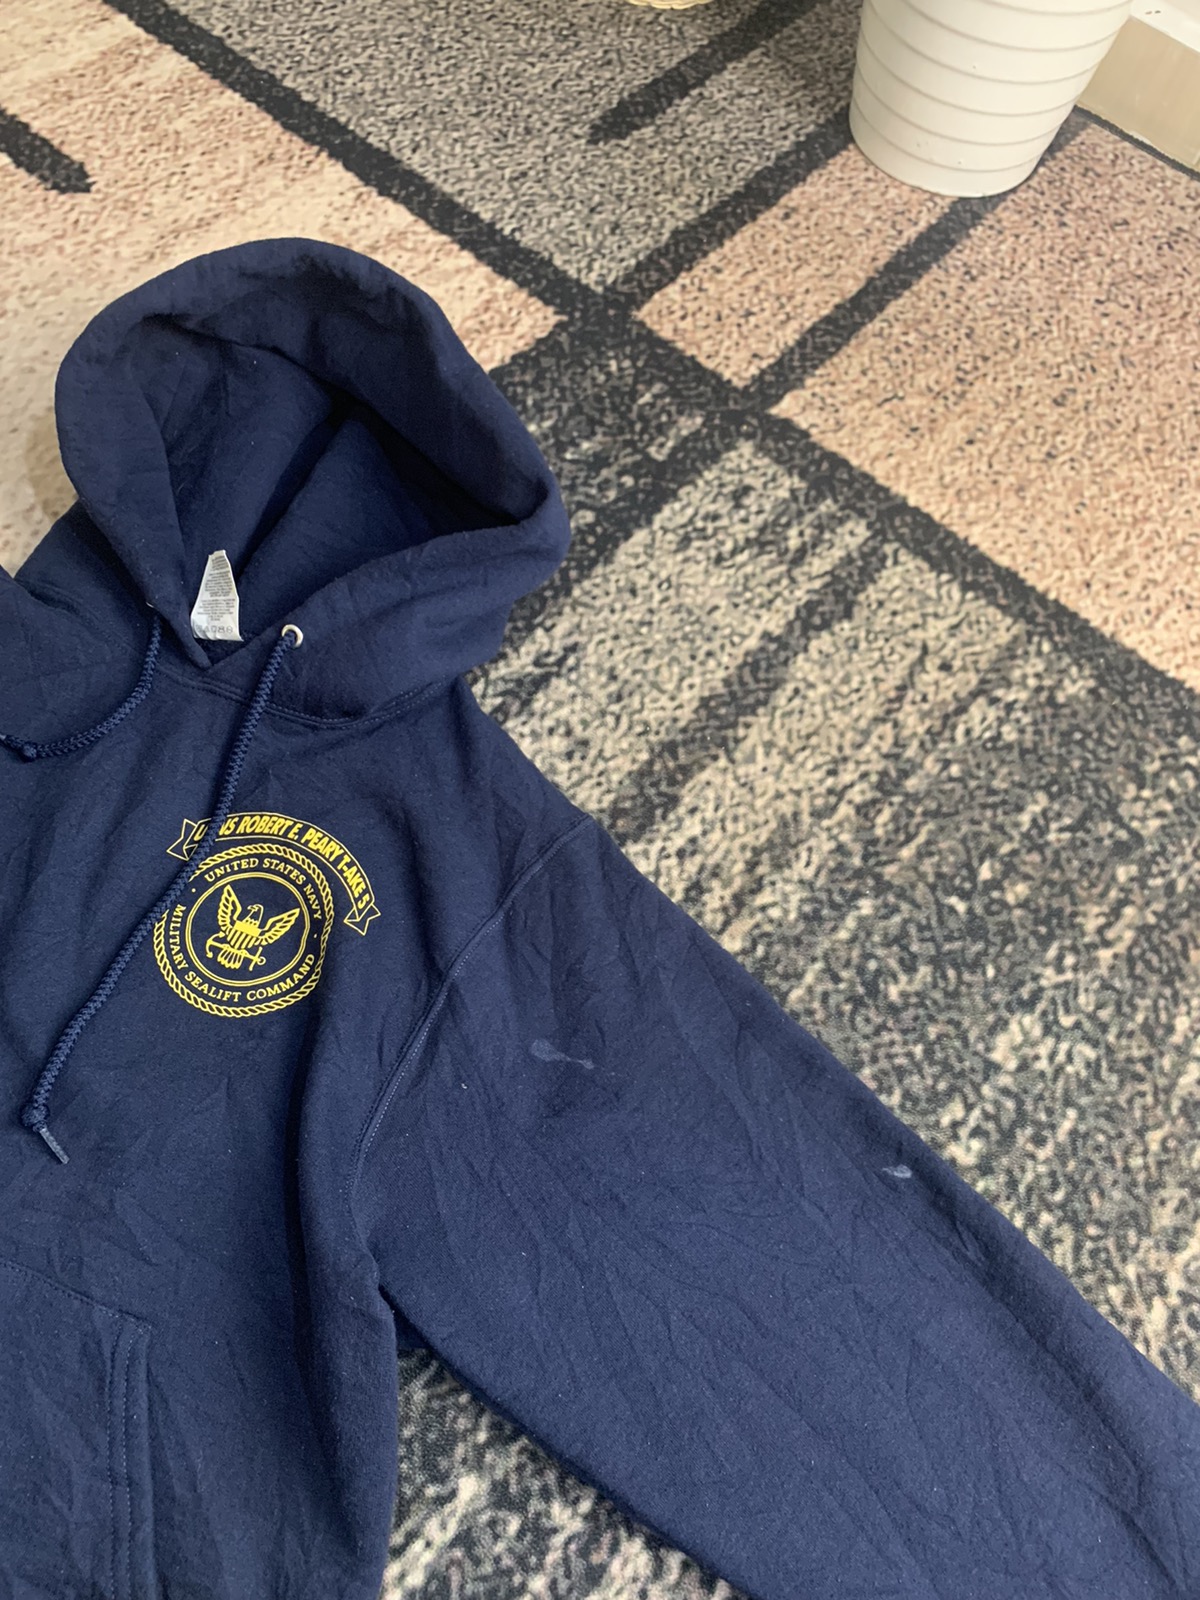 Rare - United states navy hoodies - 5